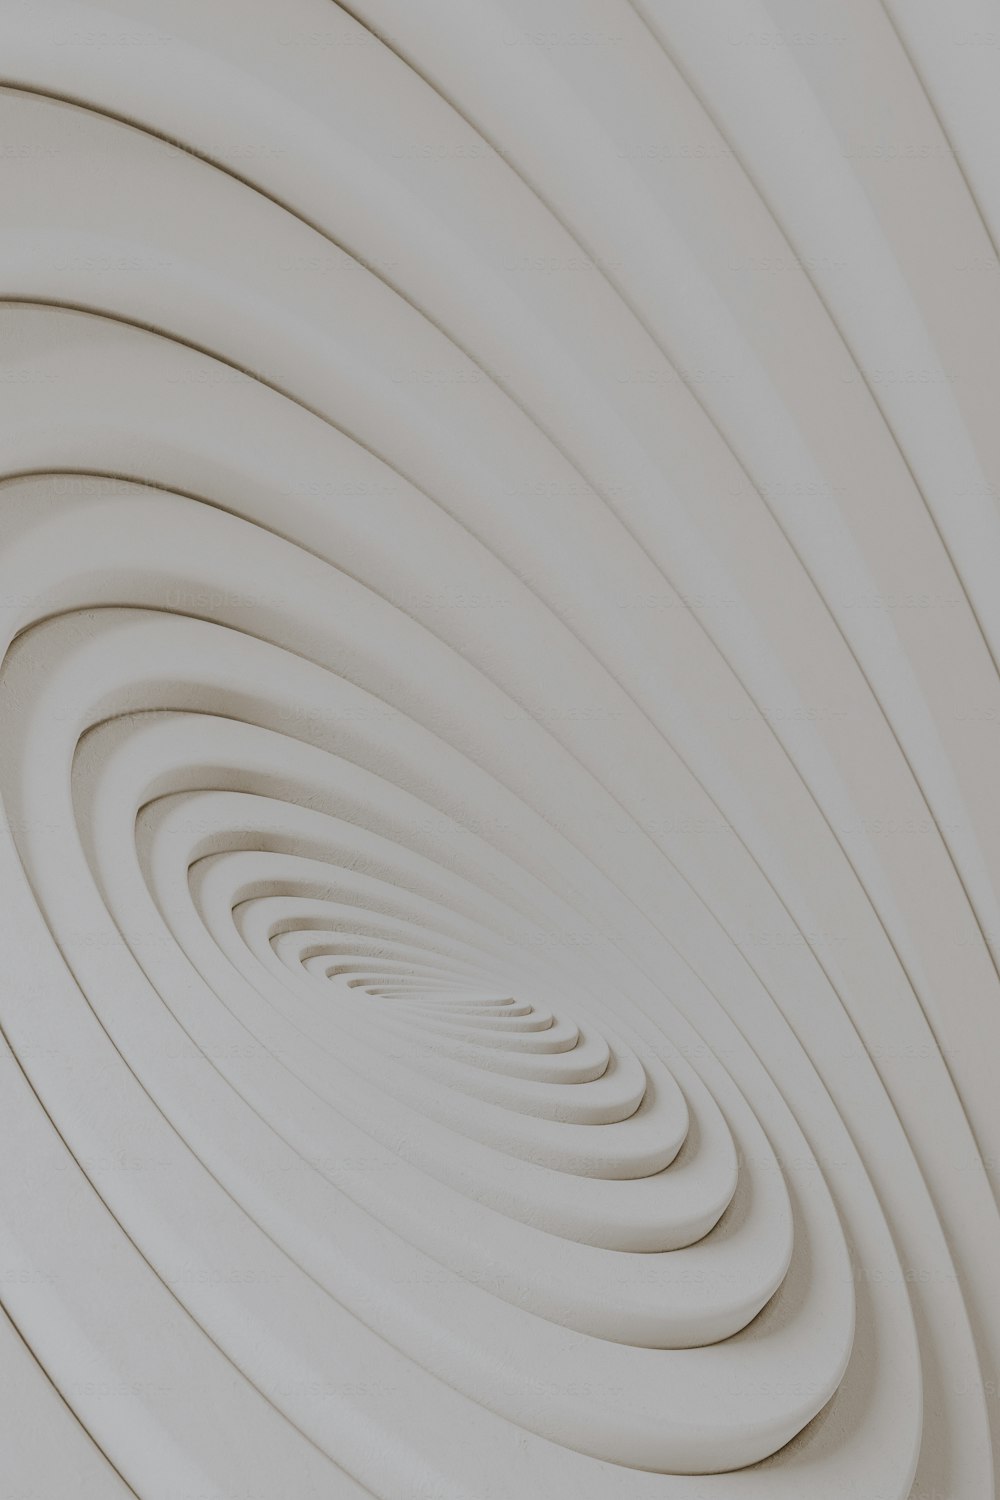 Una foto abstracta de un diseño en espiral blanca